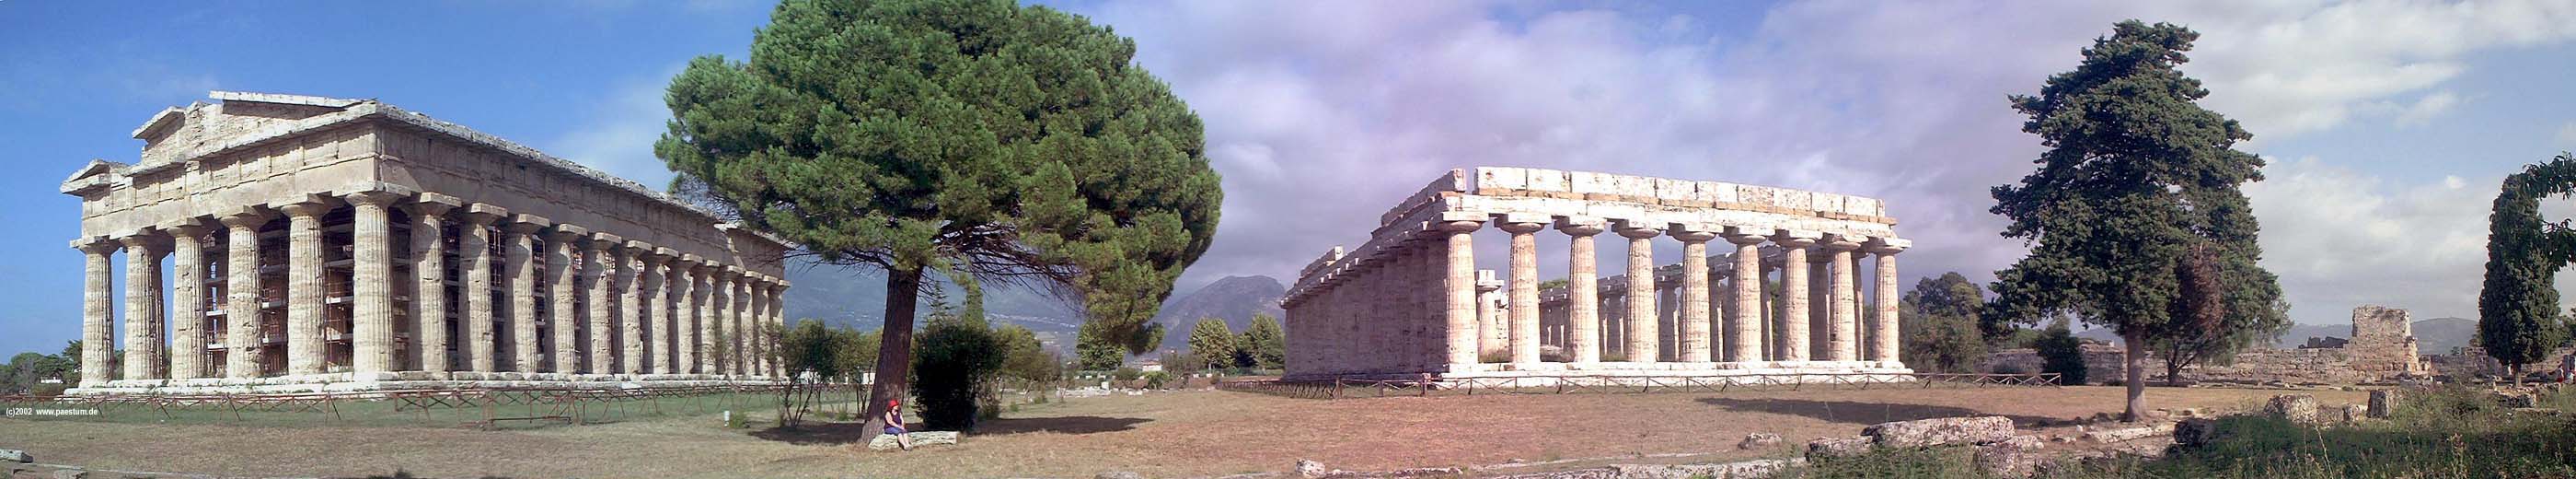 panorama temples of paestum